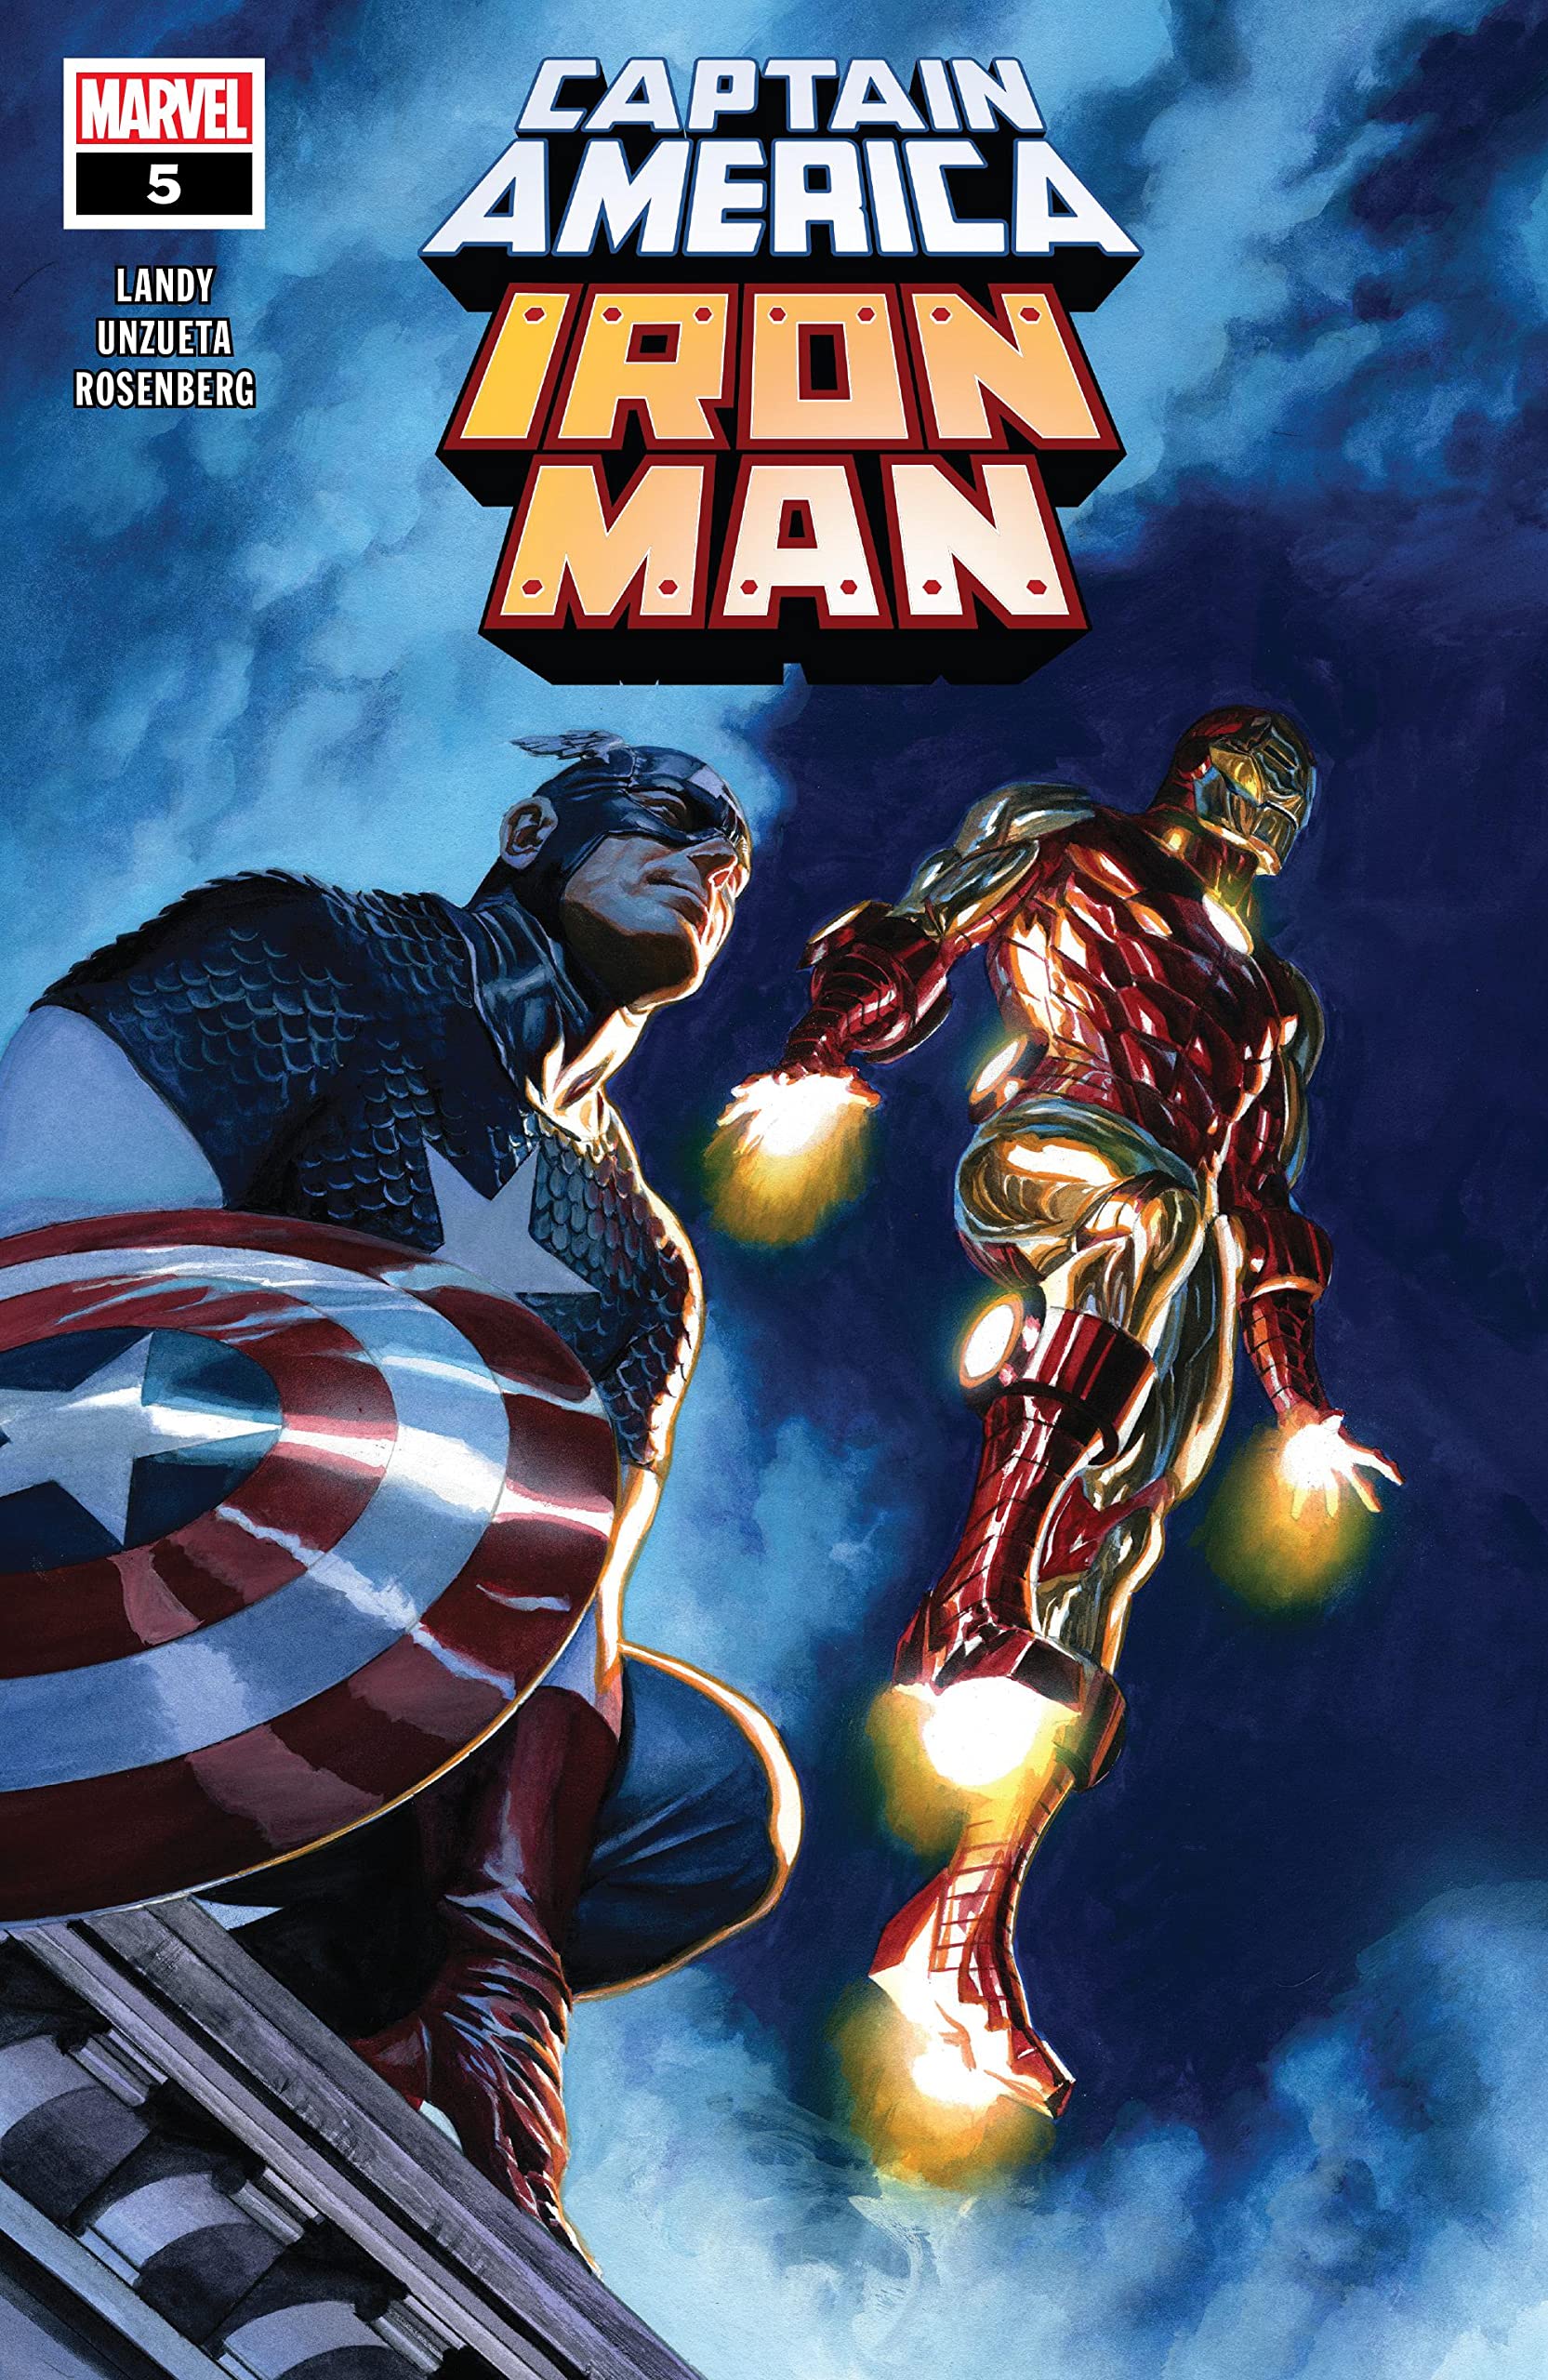 Cerdo Normalmente Florecer Captain America/Iron Man Vol 1 5 | Marvel Wiki | Fandom